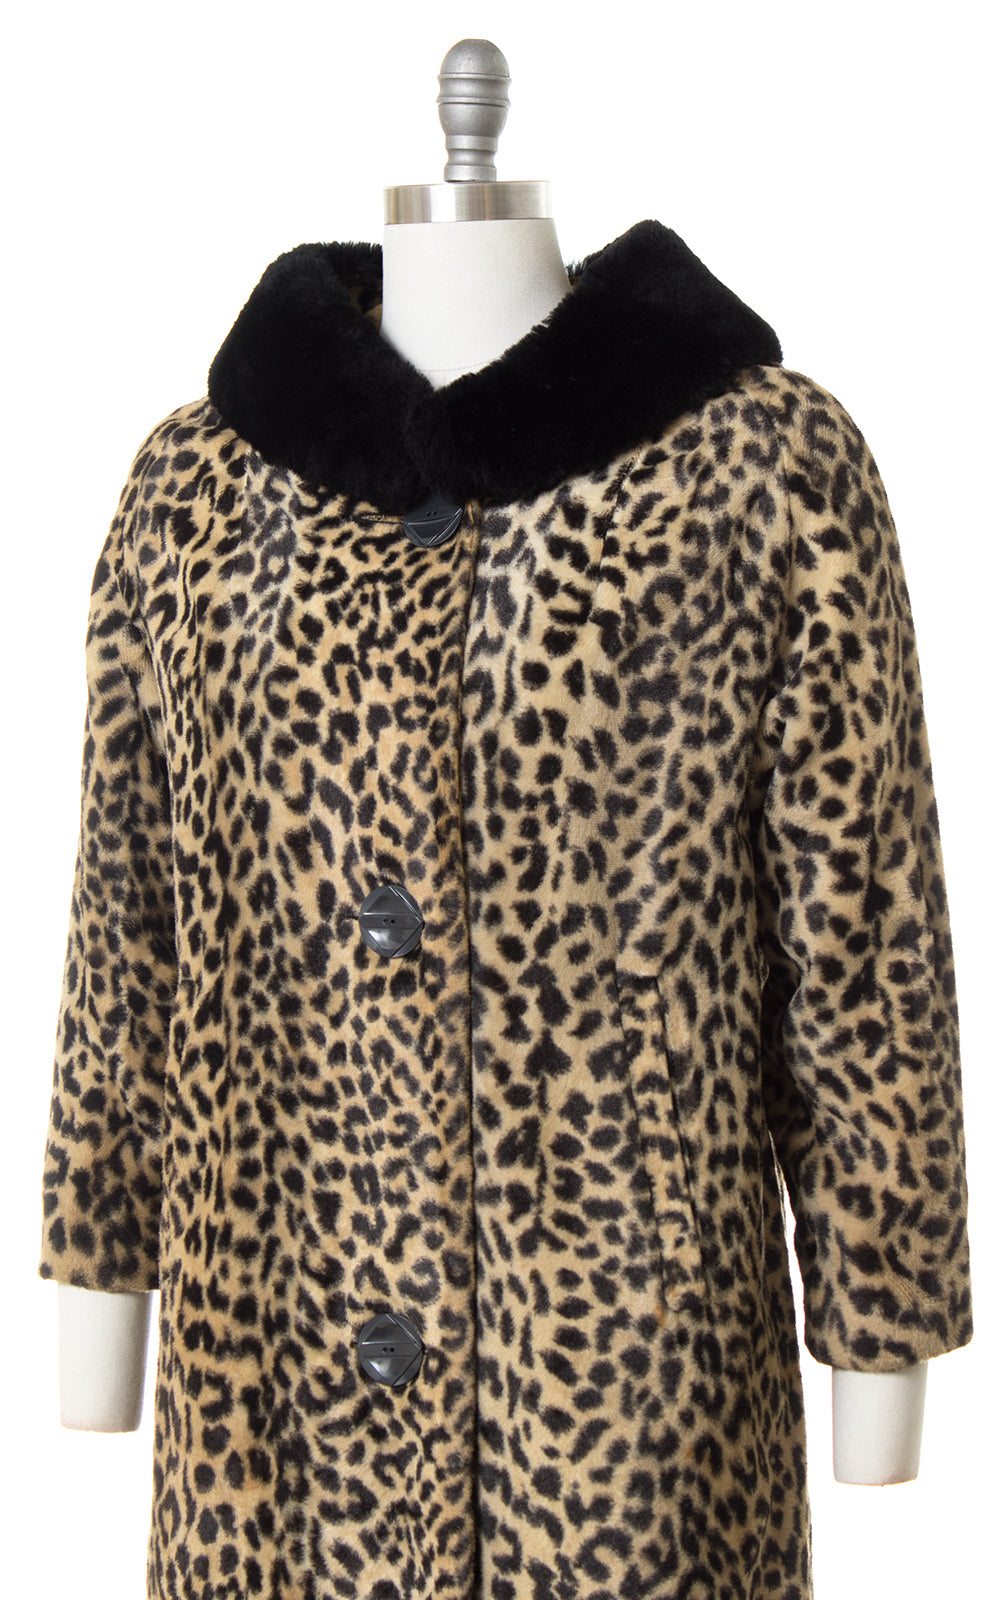 1960s Leopard Print Faux Fur Coat with Black Faux Fur Collar